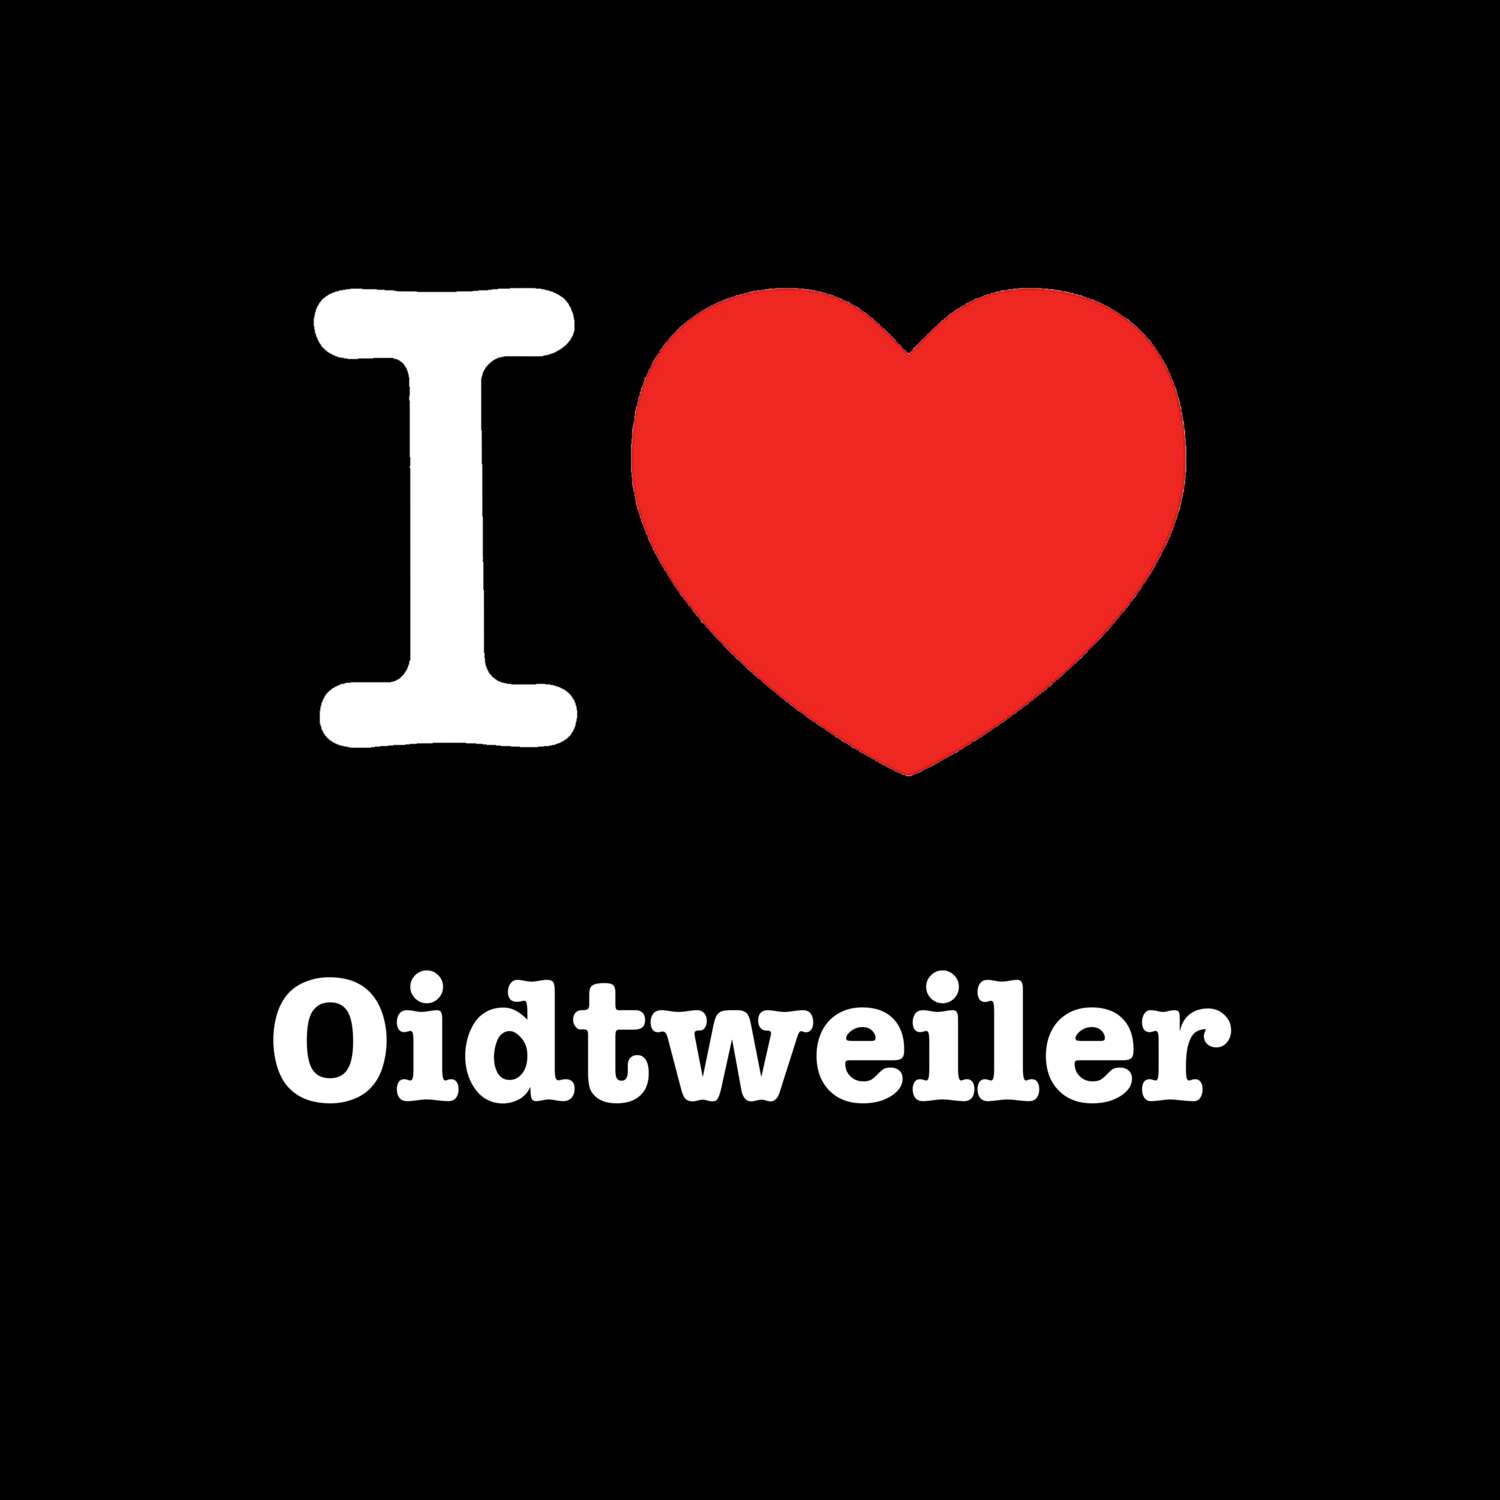 Oidtweiler T-Shirt »I love«